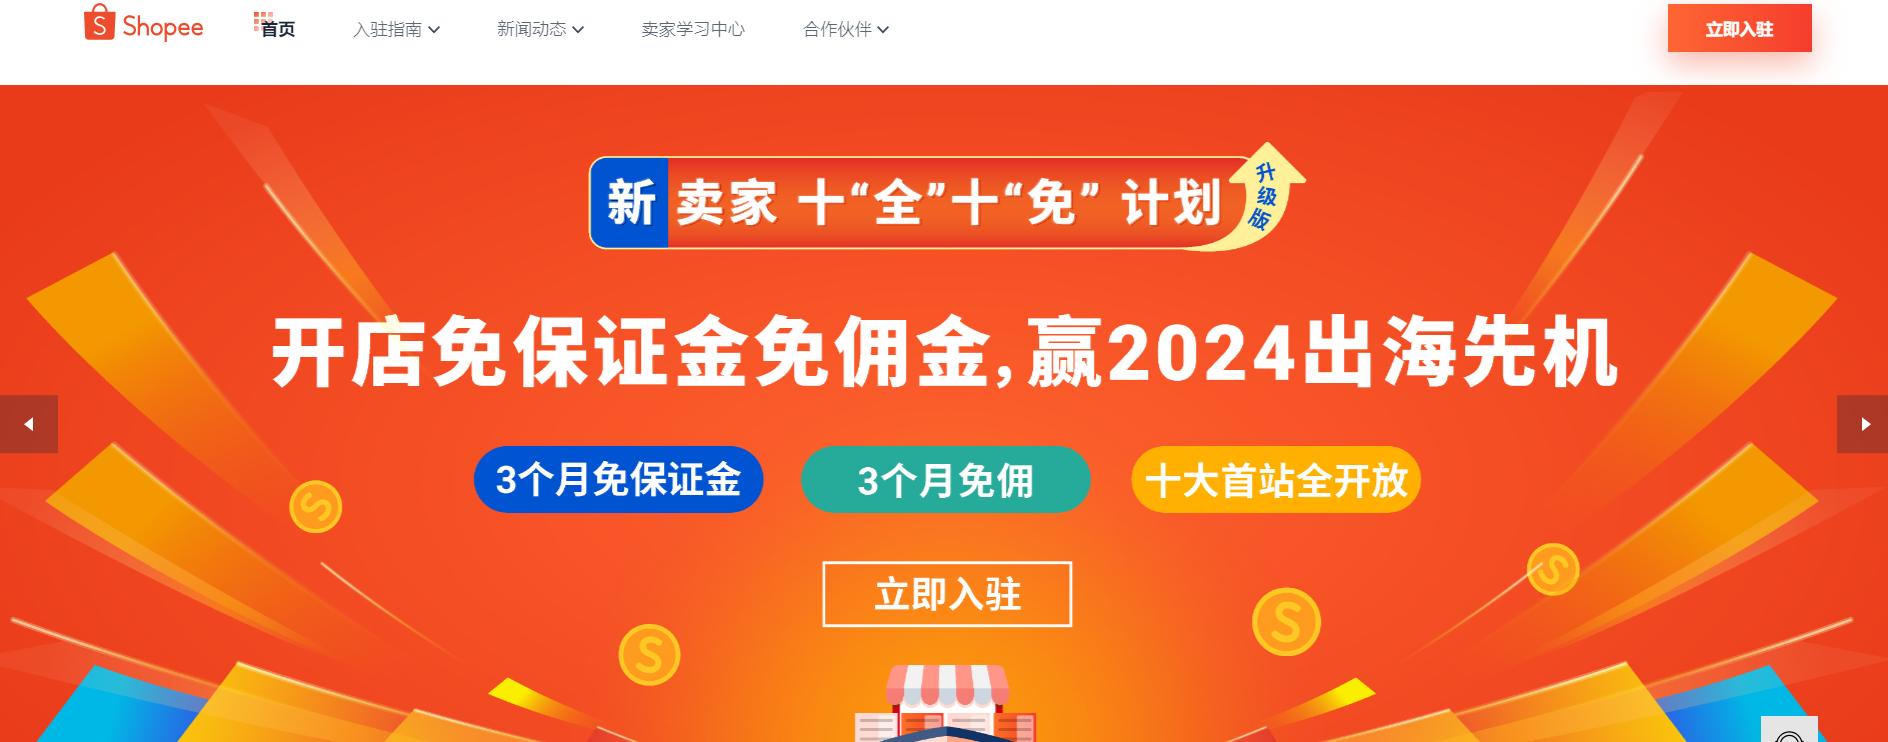 Shopee虾皮中国卖家官网页面截图